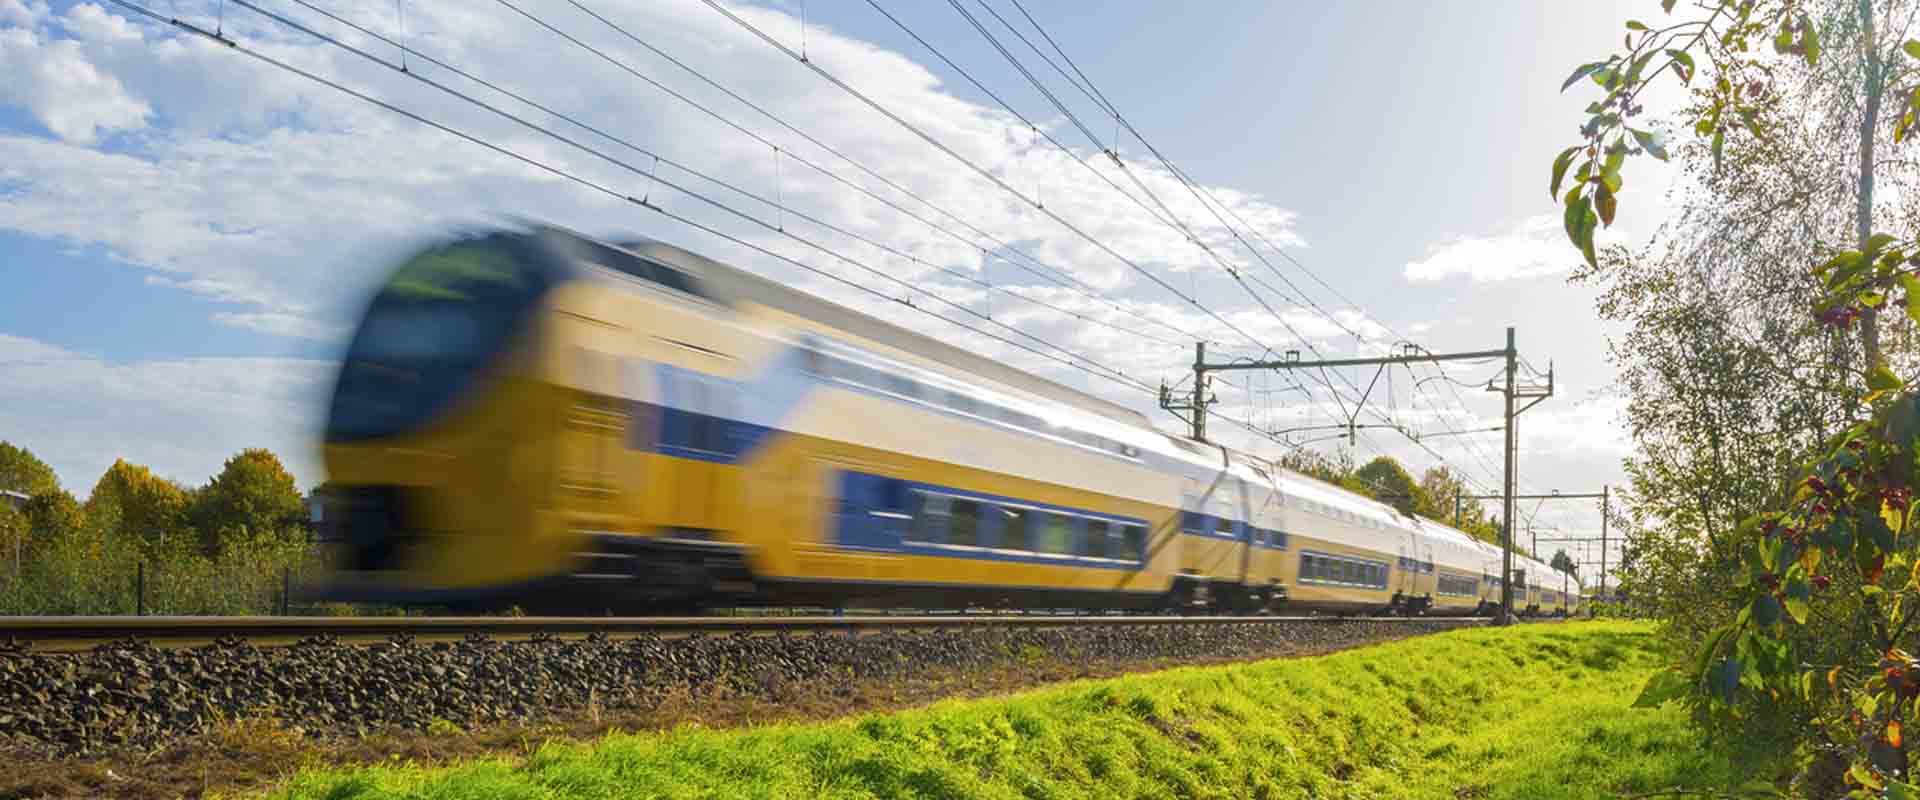 Trens elétricos na Holanda são abastecidos com 100% de energia eólica.